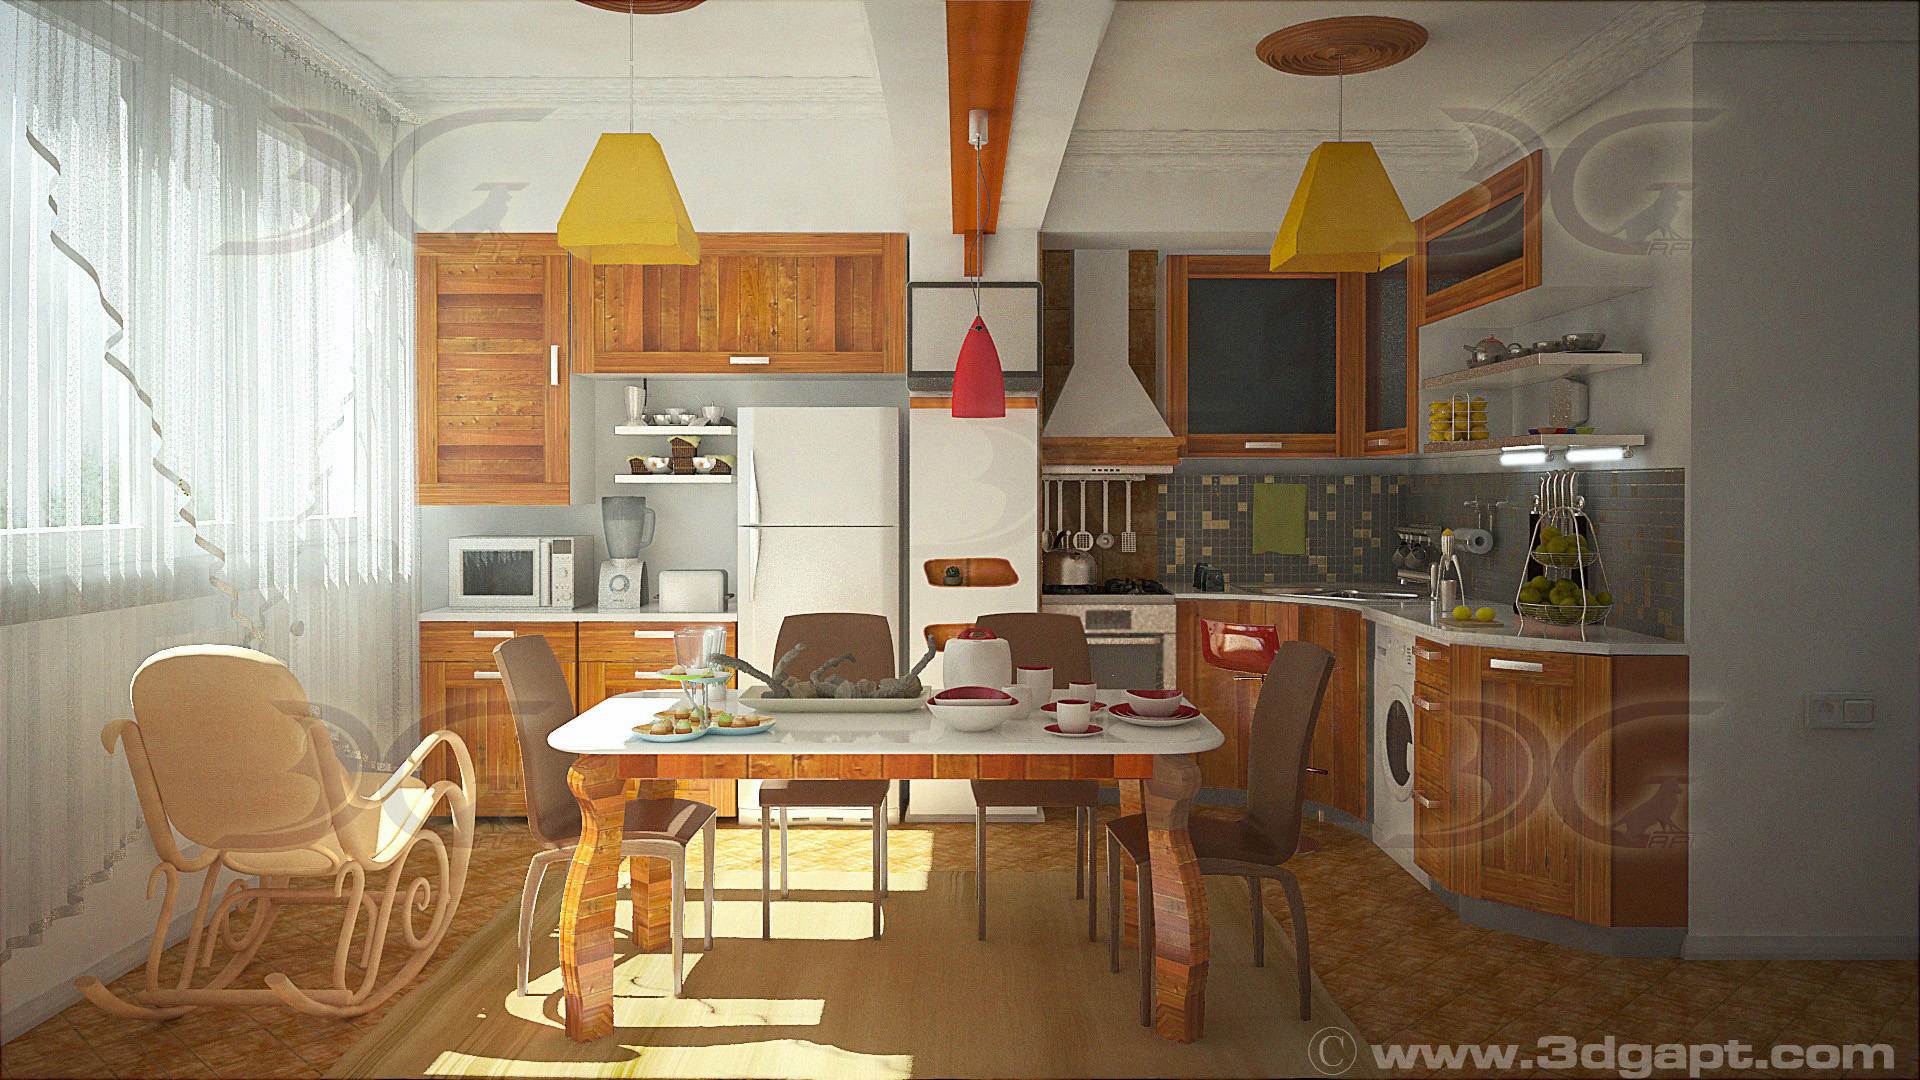 architecture interior kitchen-3versions 12